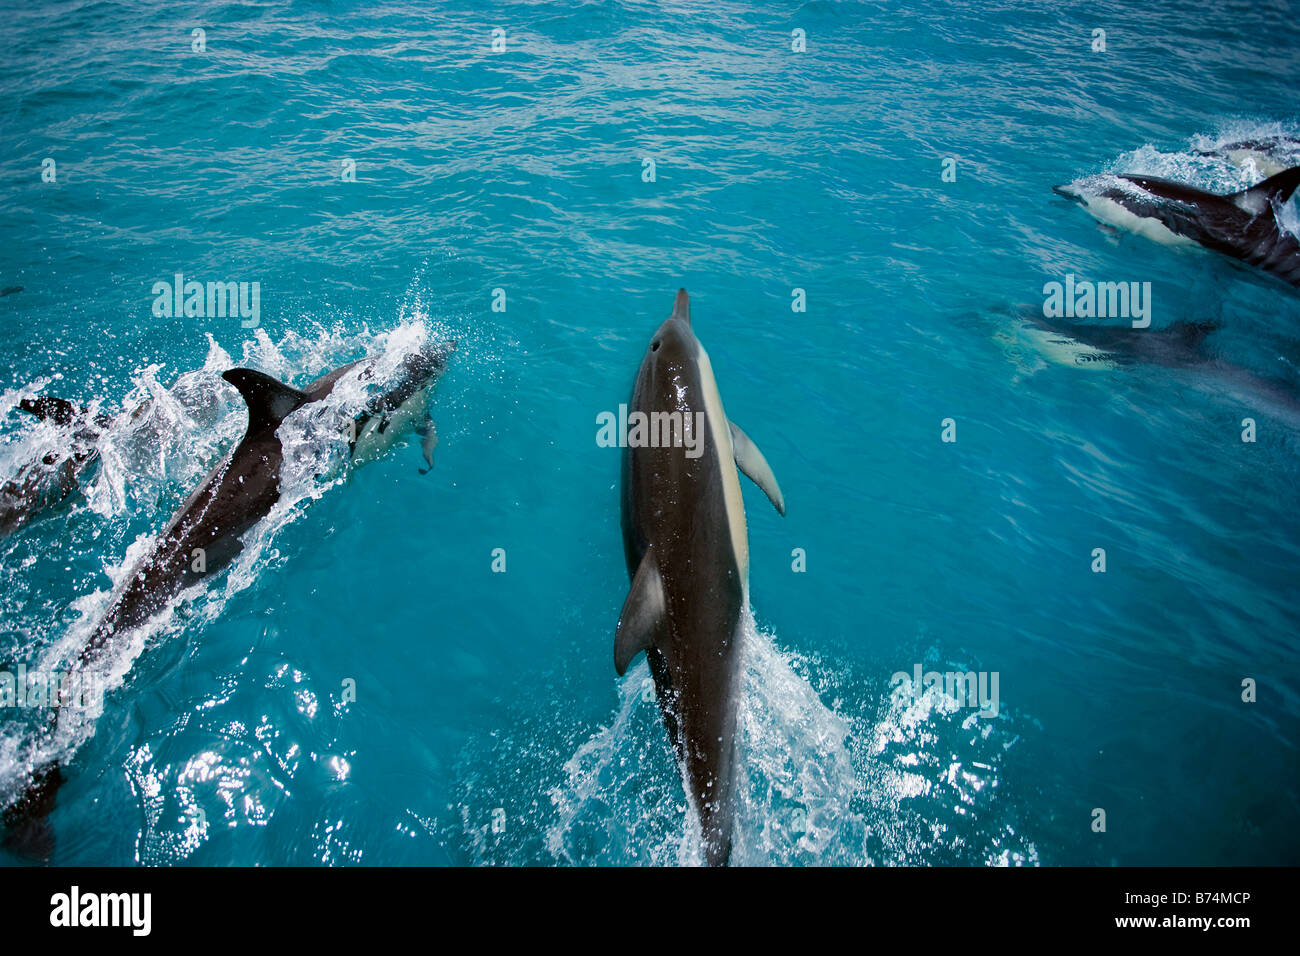 New Zealand, North Island, Whakatane,  watching dolphins. Stock Photo